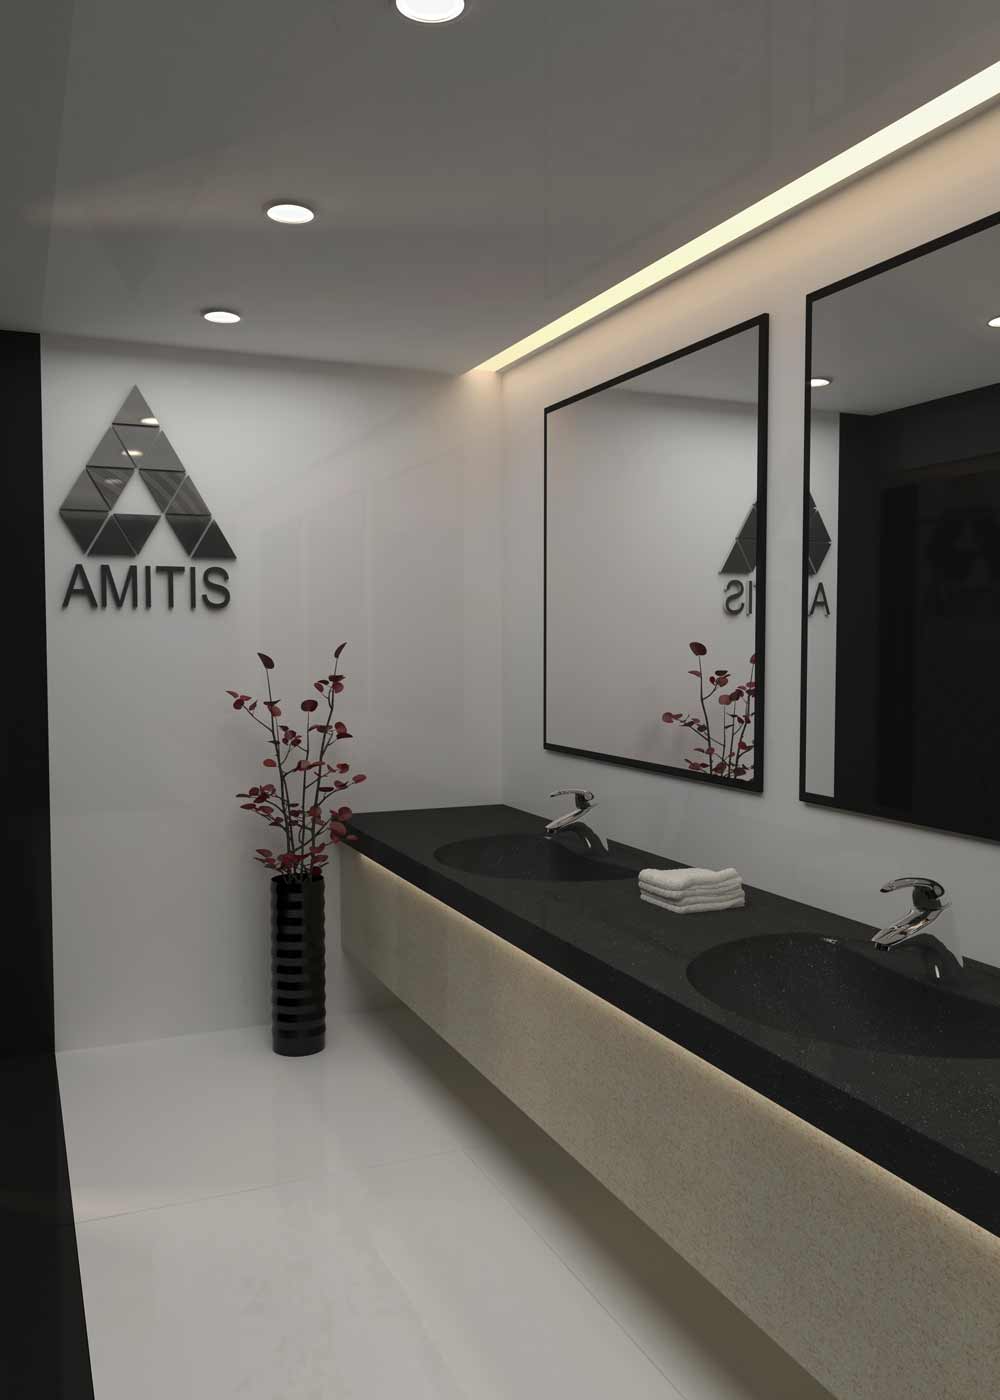 Reinheit Und Eleganz Mit Der Schwarzen Farbe Der Integrierten Amitis-Waschtische Für Öffentliche Einrichtungen